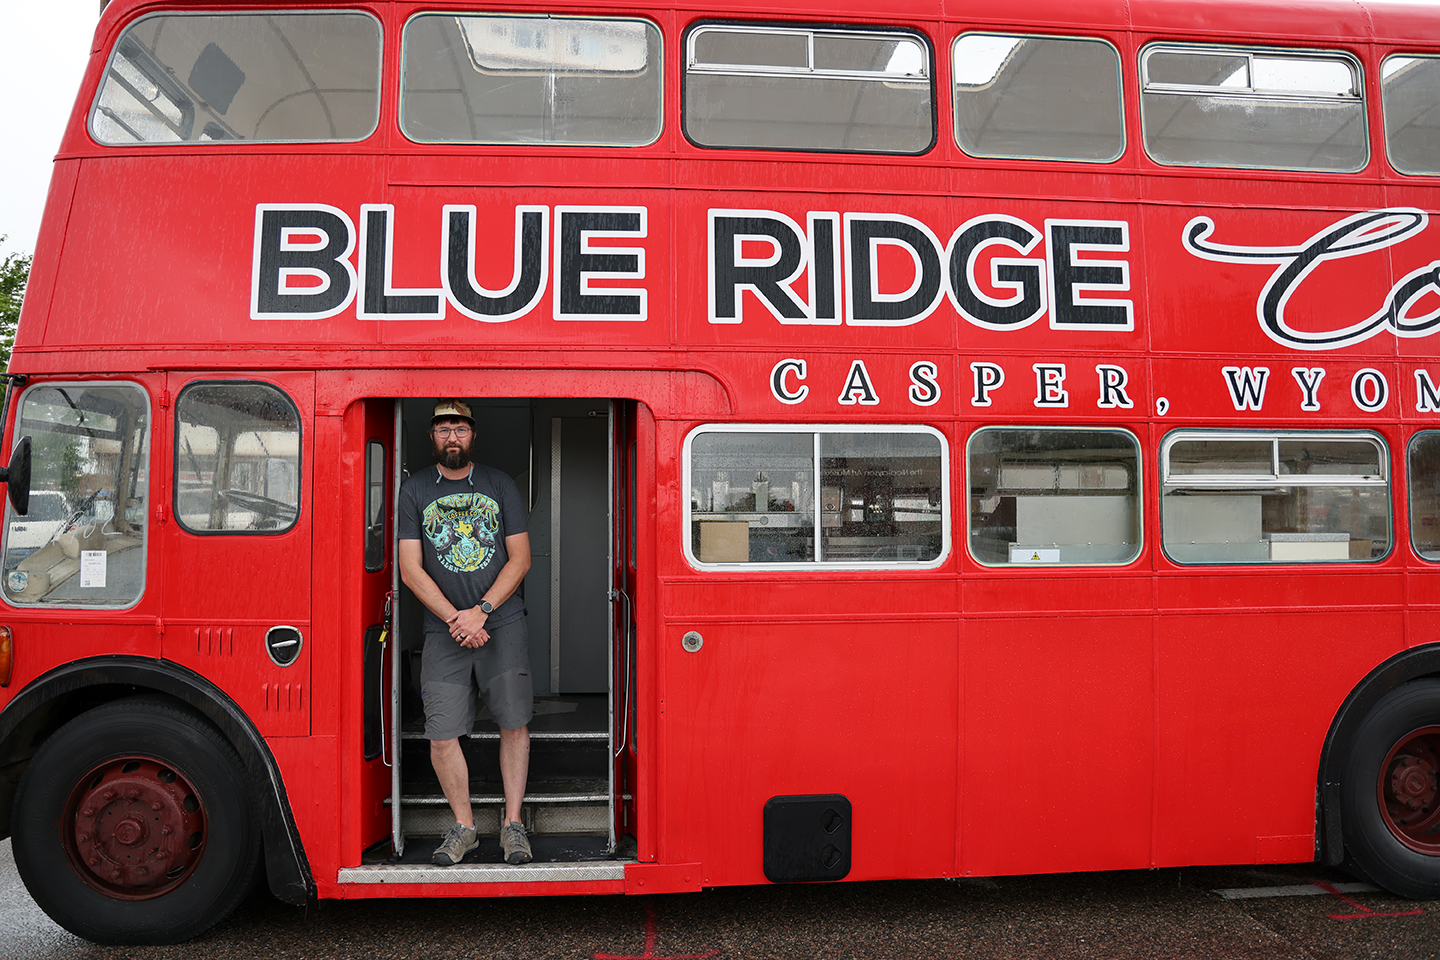 PHOTOS) Double Shot: Vintage double decker bus reimagined as mobile coffee shop - Casper, WY City